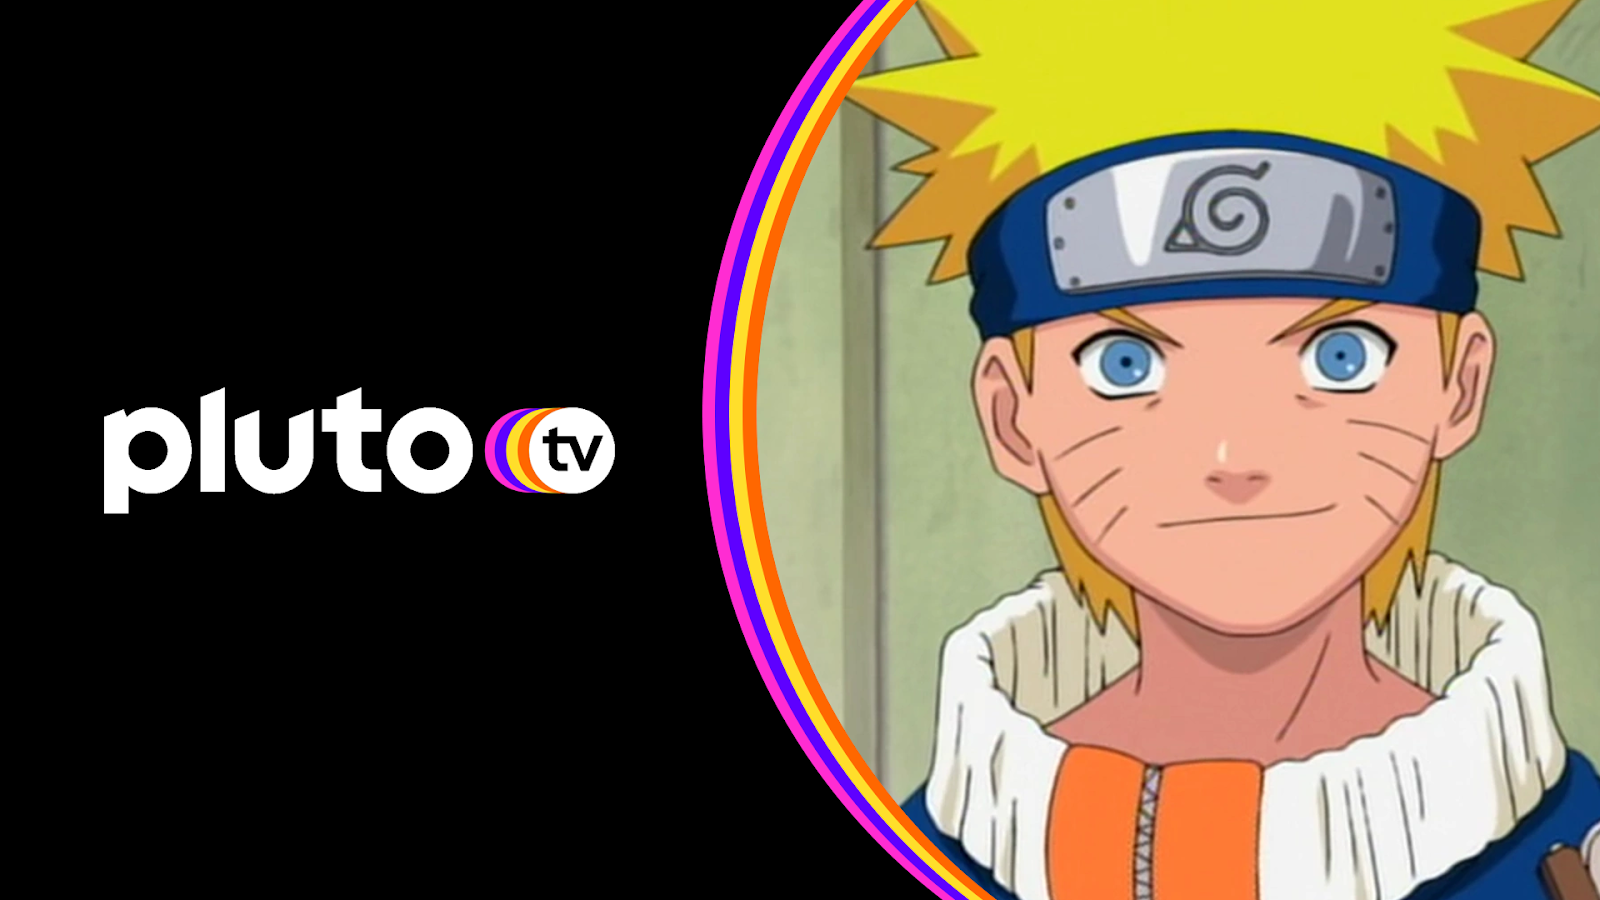 Naruto  Oito filmes do anime estreiam dublados na Netflix